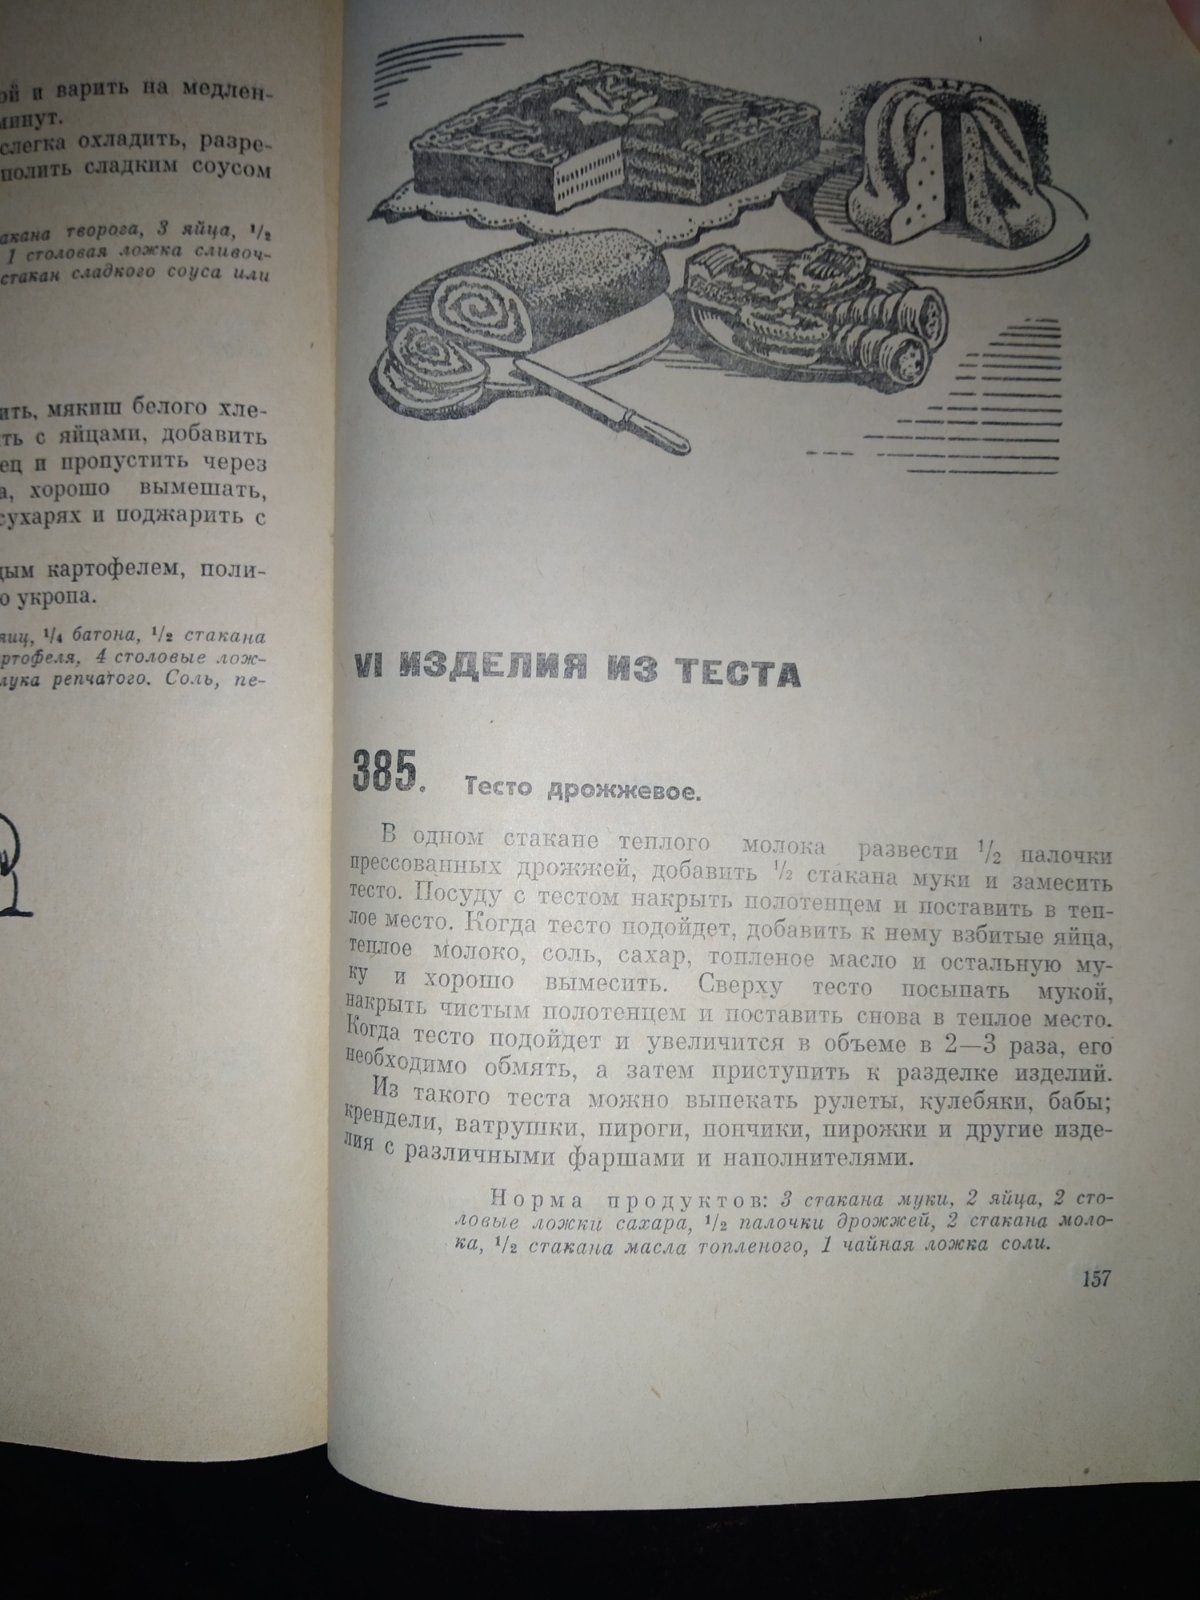 Старая кулинарная книга. Вегетарианские блюда 1962 г.